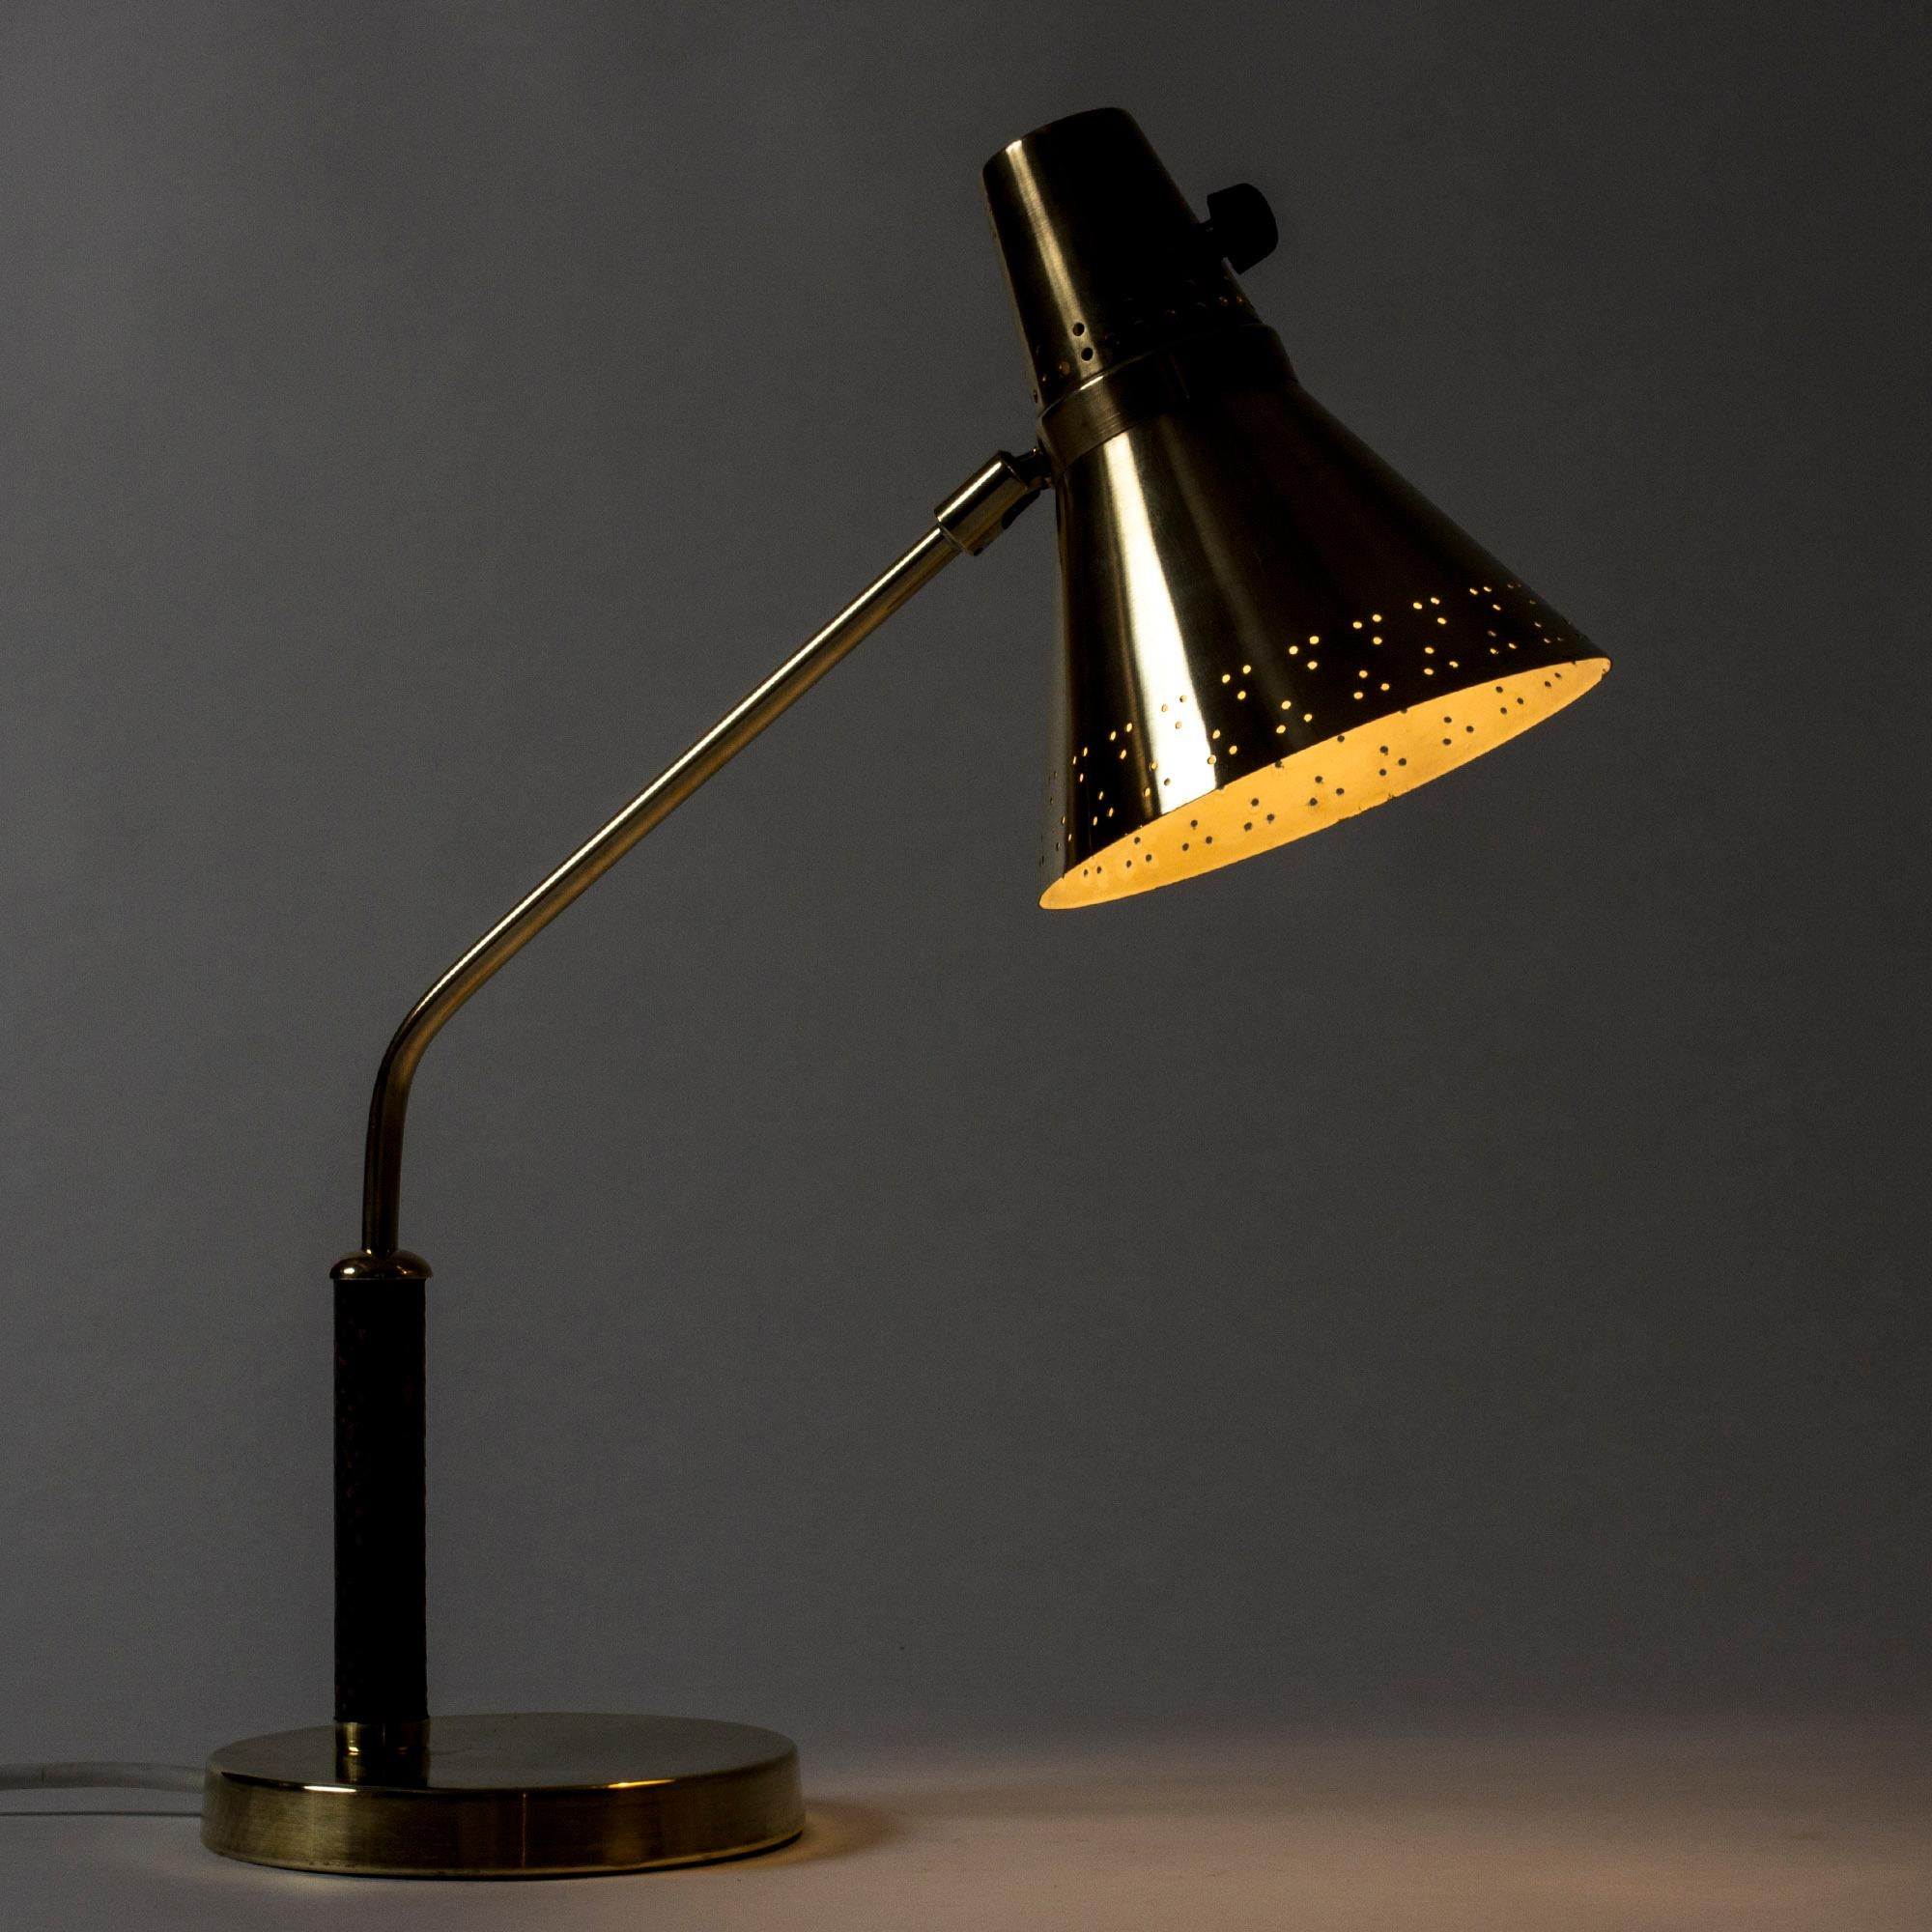 Sehr elegante Tisch- oder Schreibtischlampe von E. Hansson & Co, hergestellt aus Messing. Schirm mit einem perforierten Muster, das im dunklen, mit Schlangenhaut gepolsterten Griff schön aussieht.